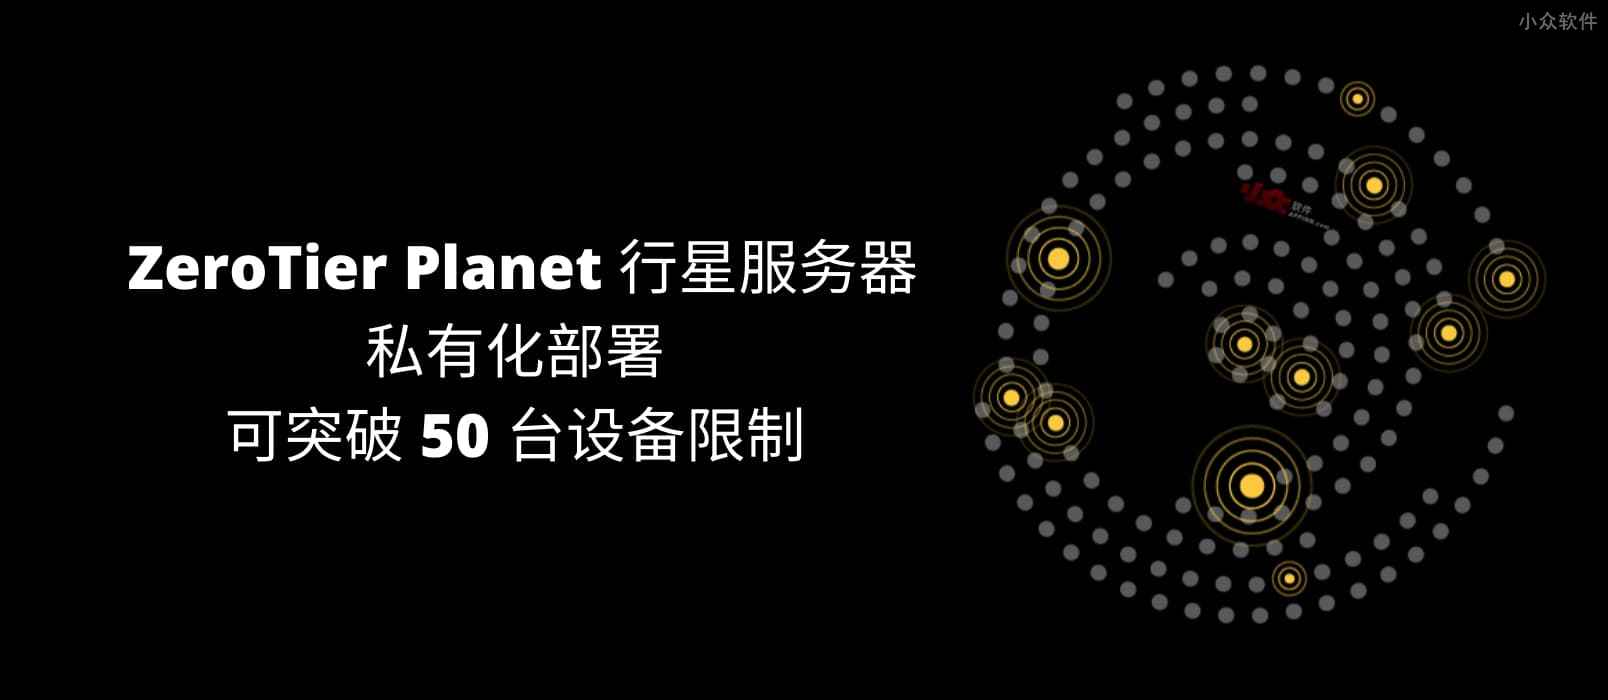 ZeroTier Planet 行星服务器，一键私有部署，可突破 50 台设备限制